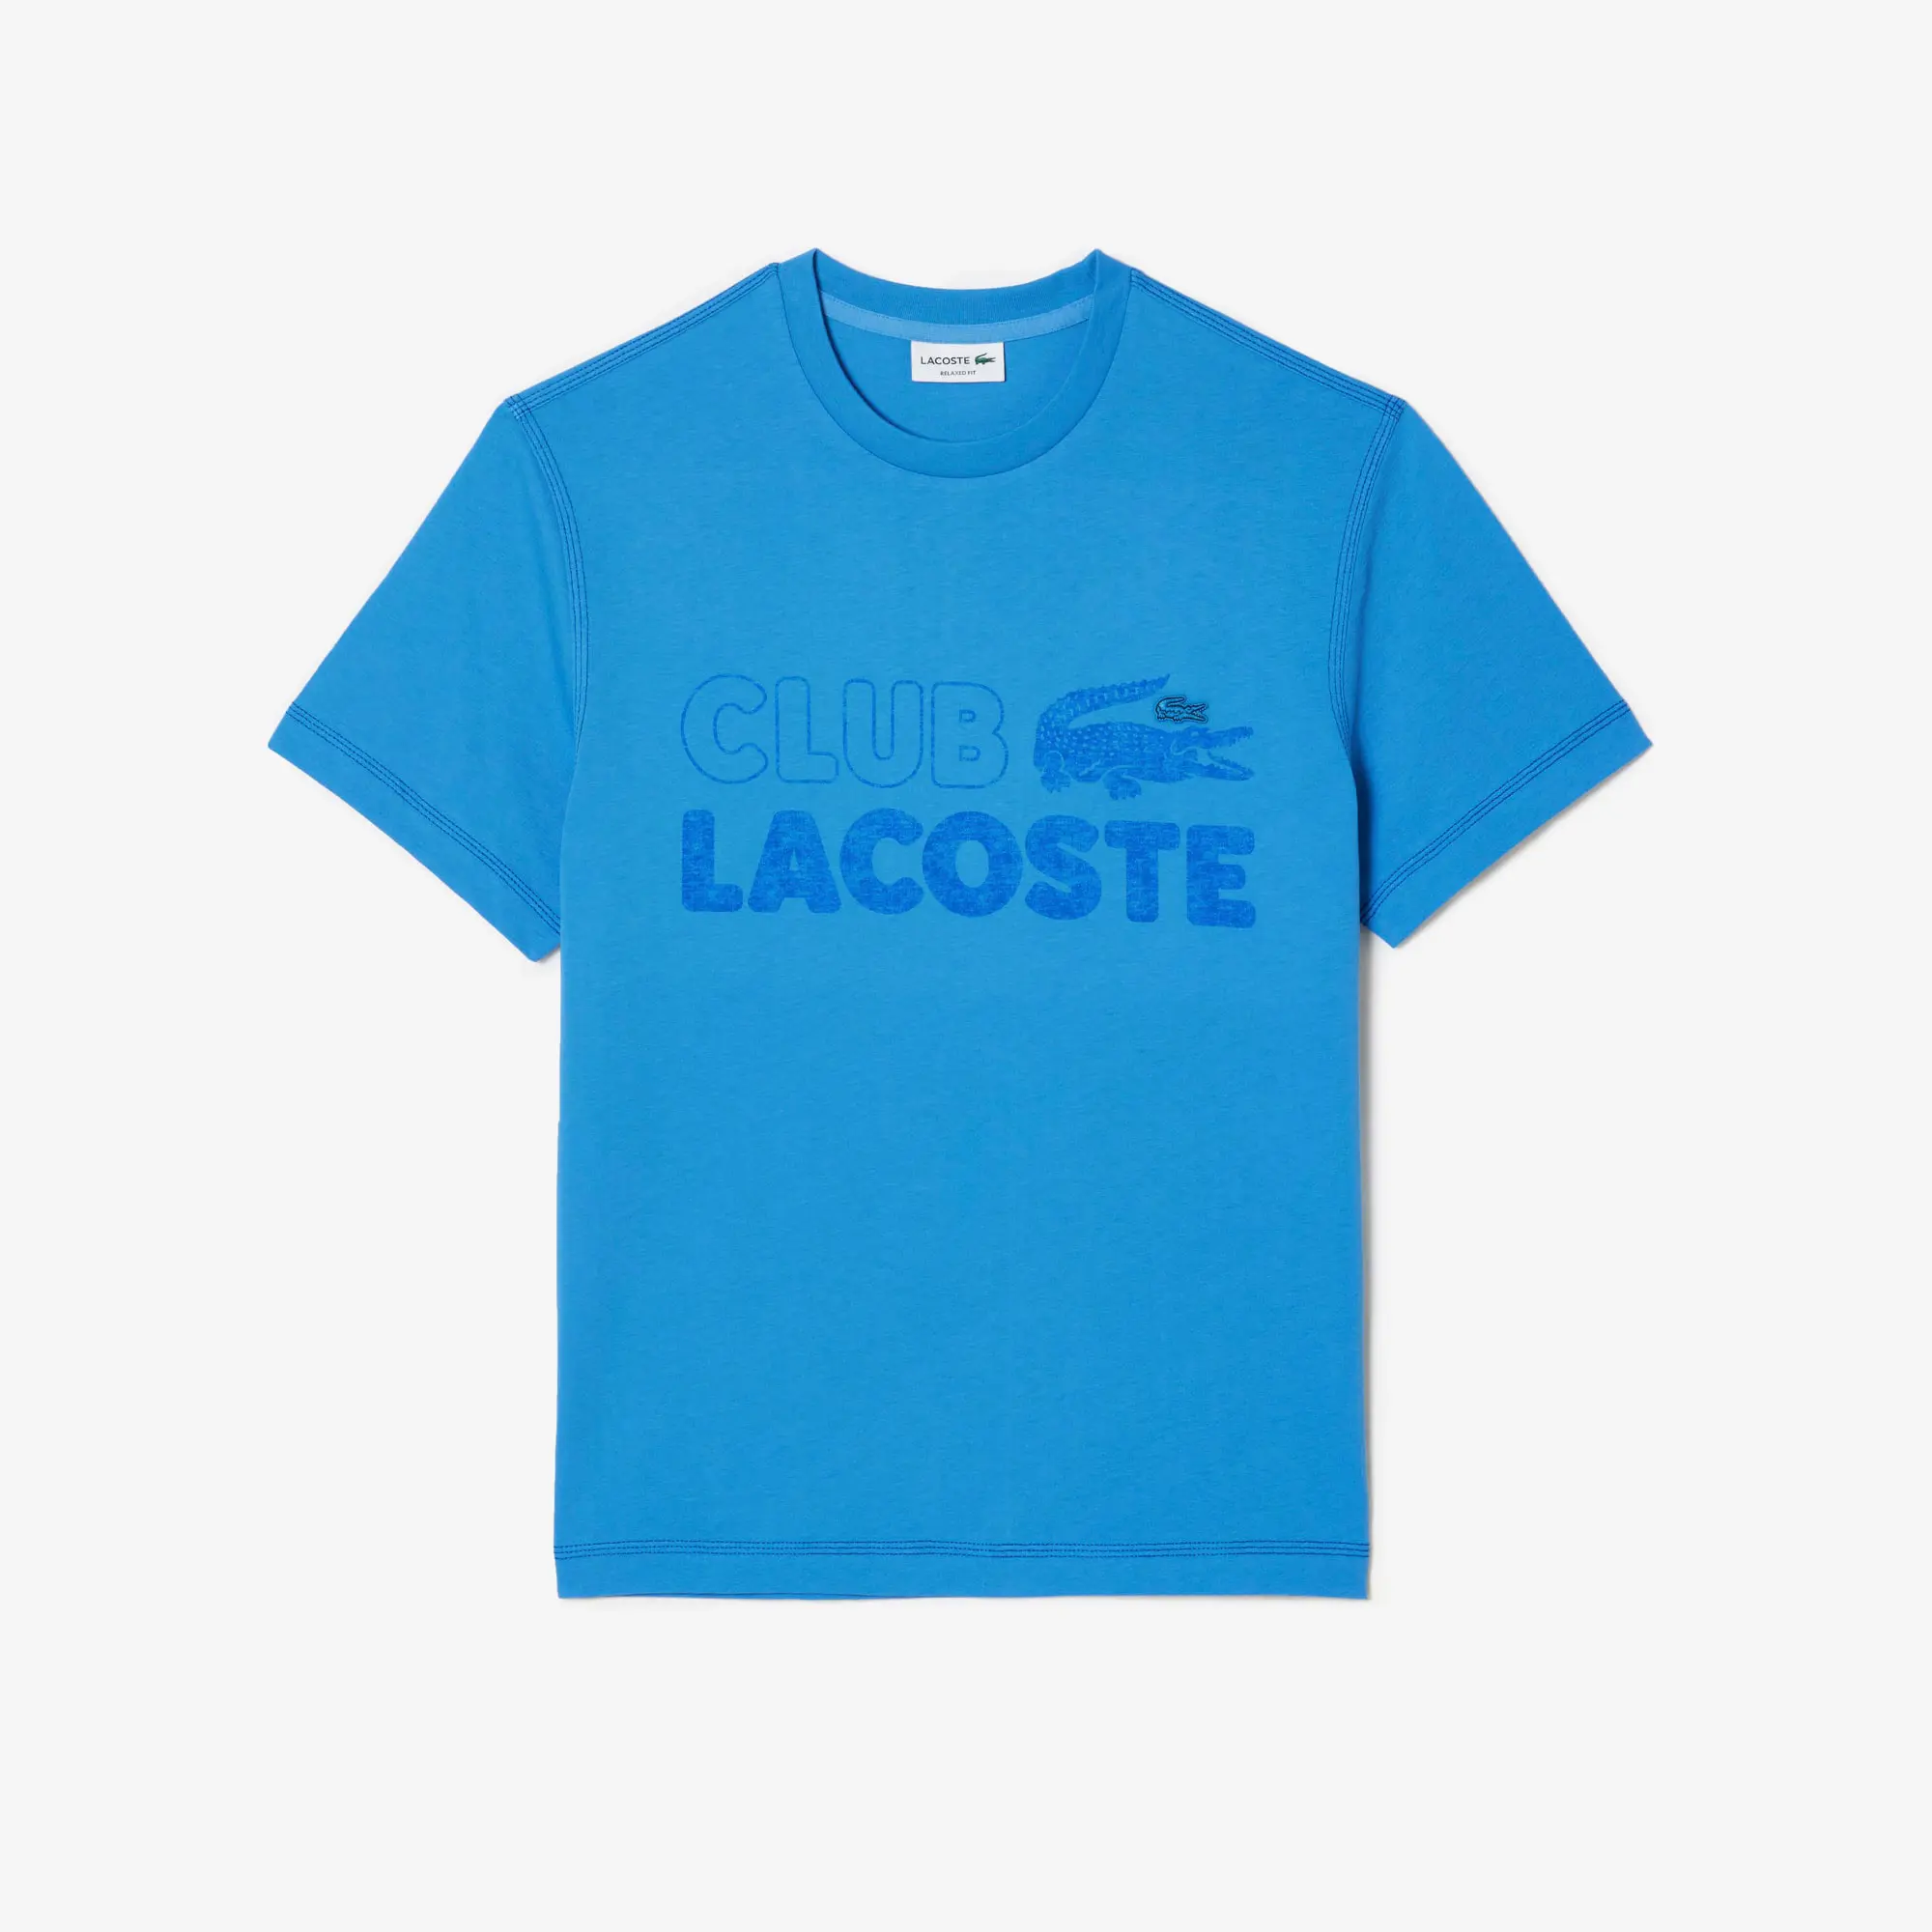 Lacoste Men’s Vintage Print Organic Cotton T-Shirt. 2